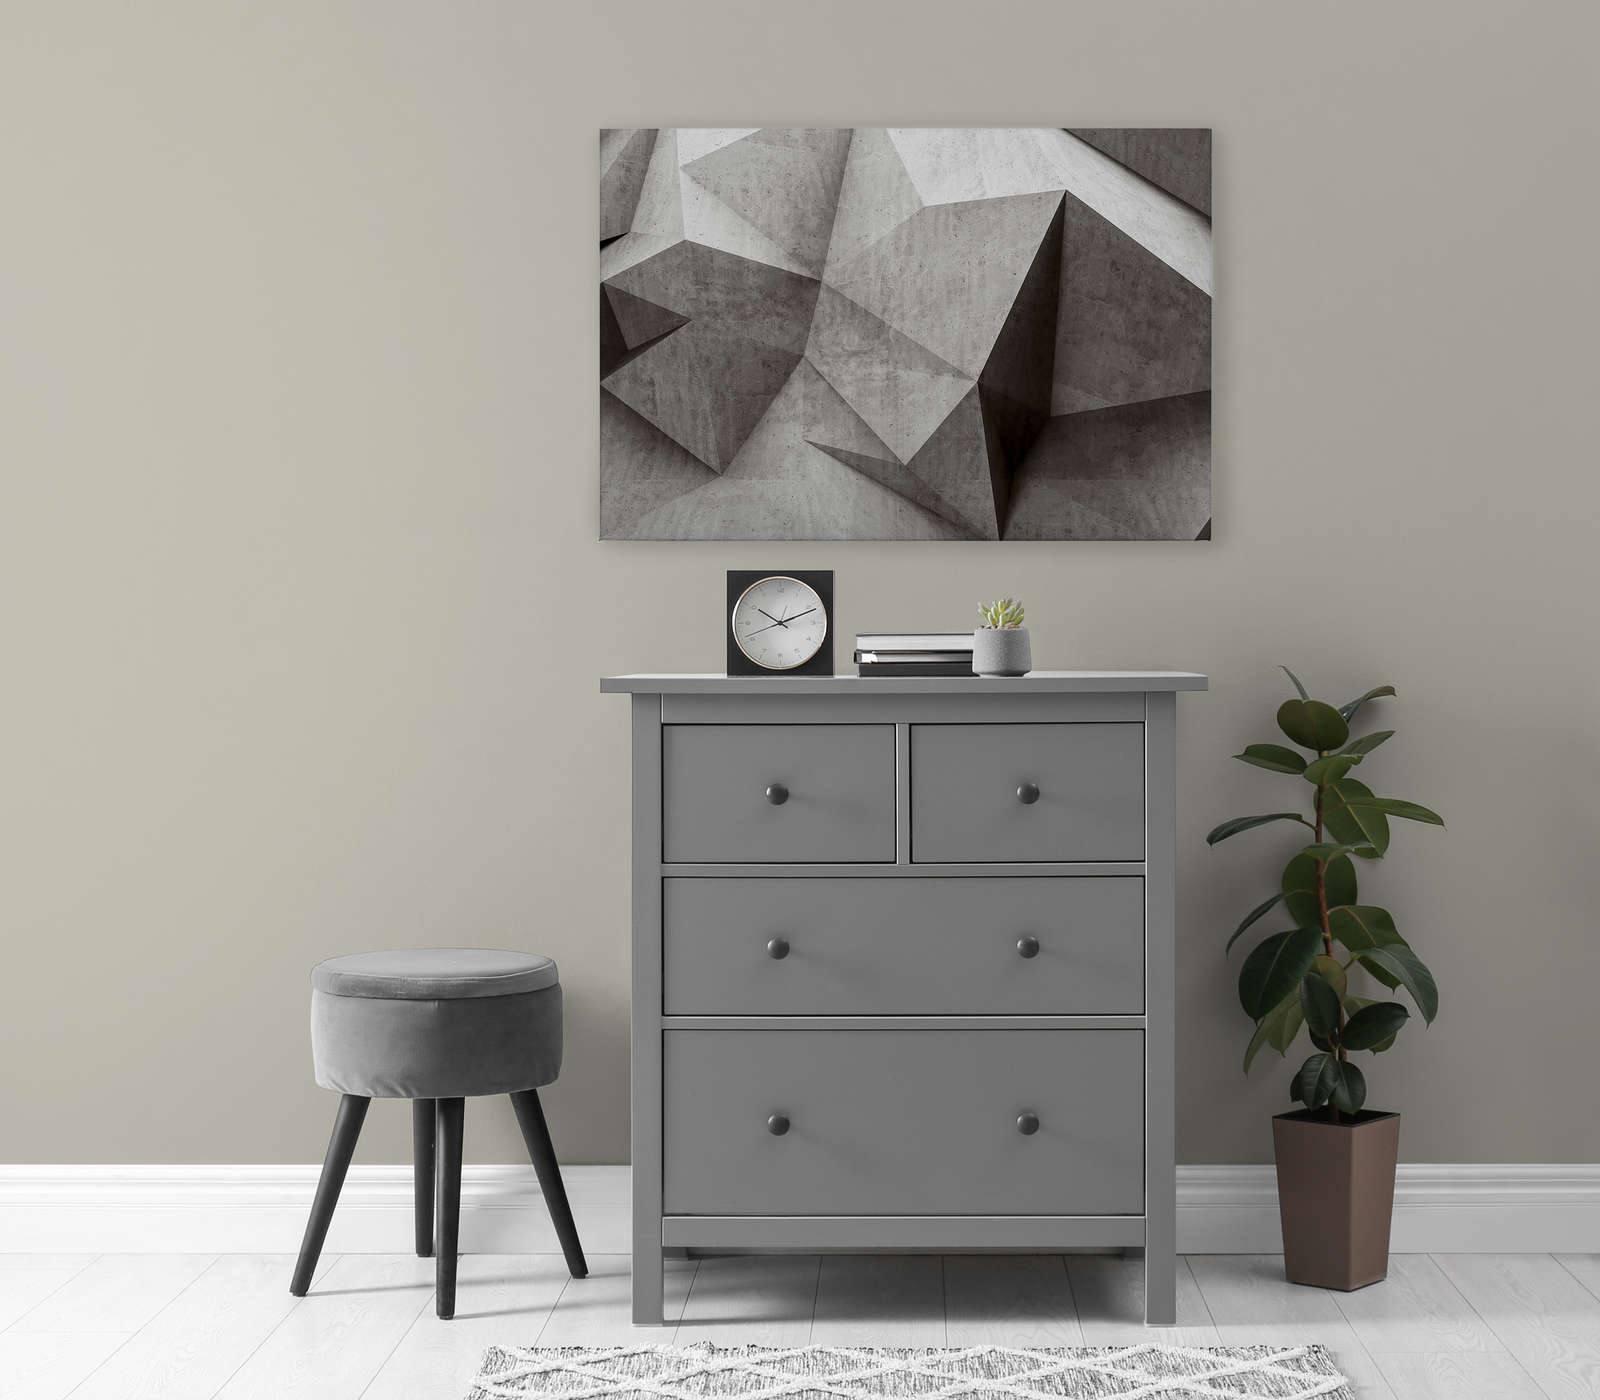             Boulder 1 - Pittura su tela con poligoni di cemento 3D - 0,90 m x 0,60 m
        